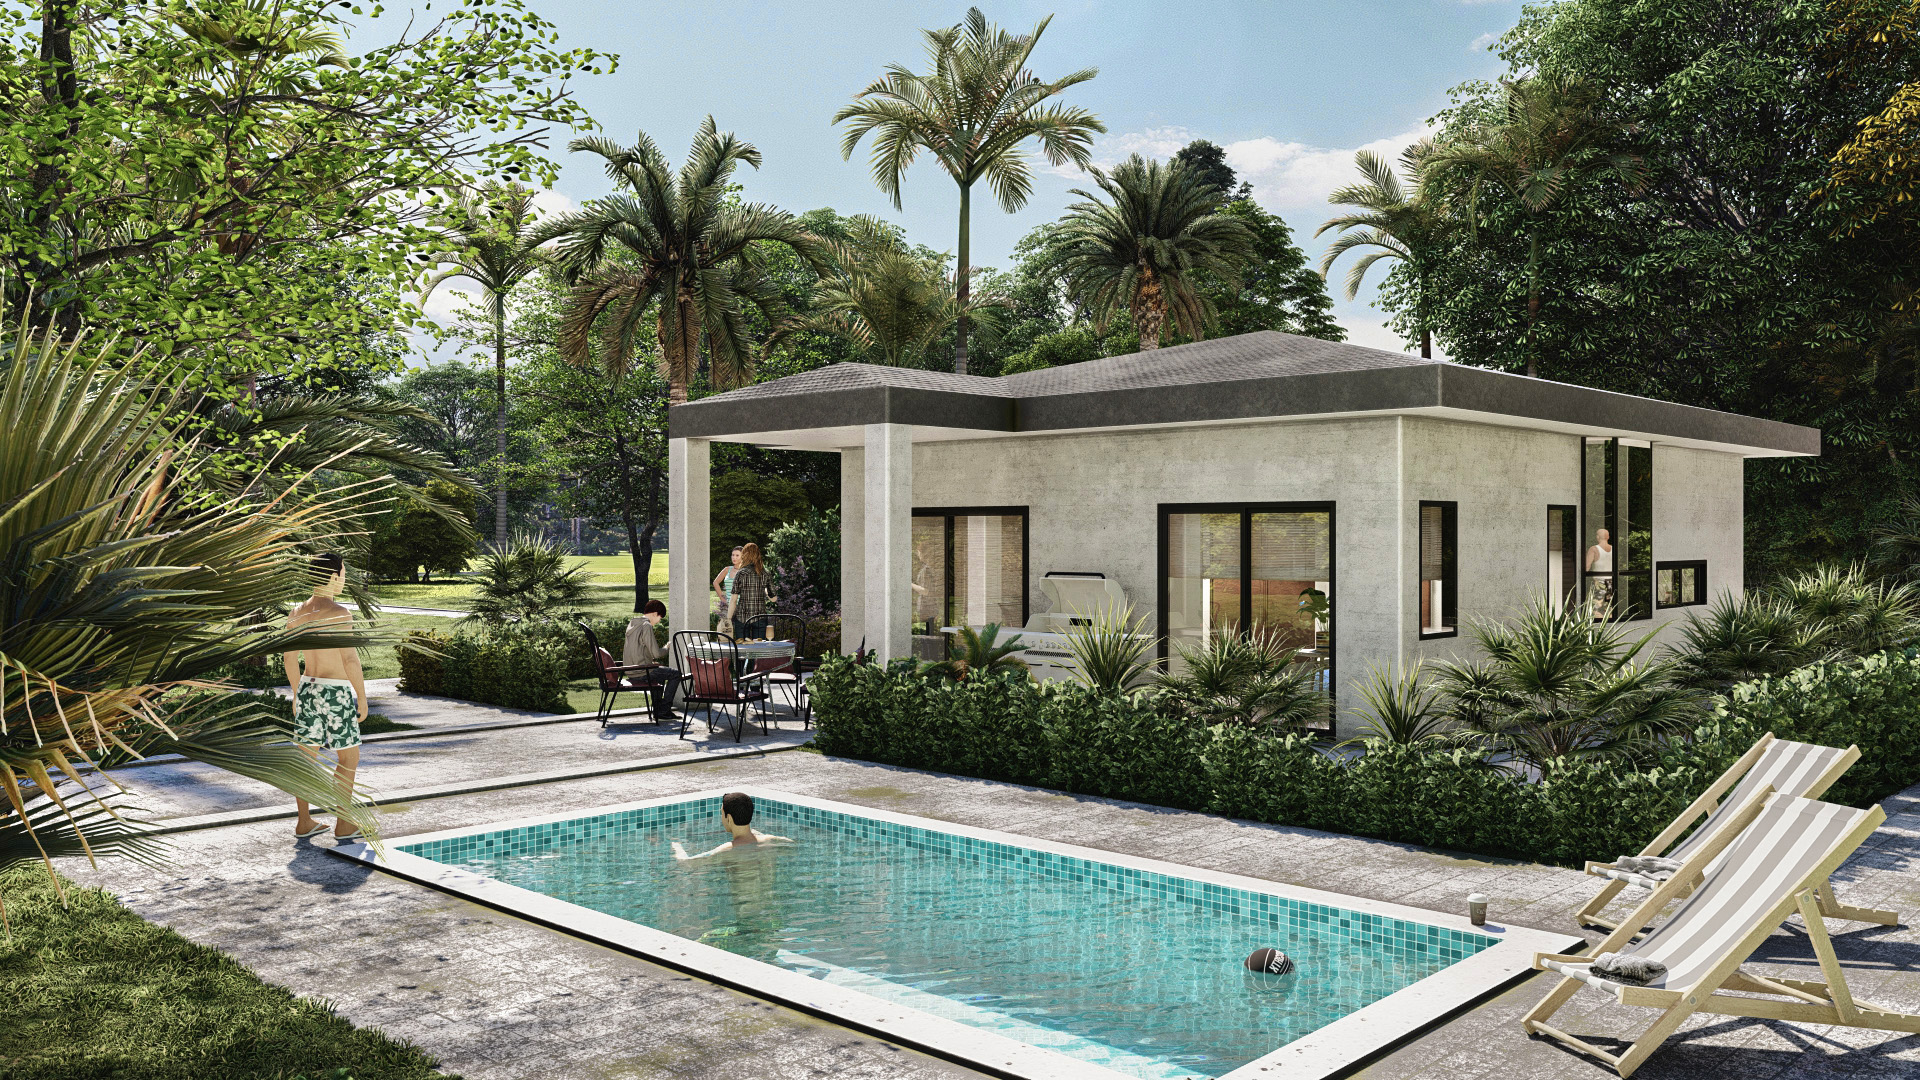 Our home model "Casa Coqueta" with a pool. Bosque del Pacifico - The beach Homes for sale Costa Rica